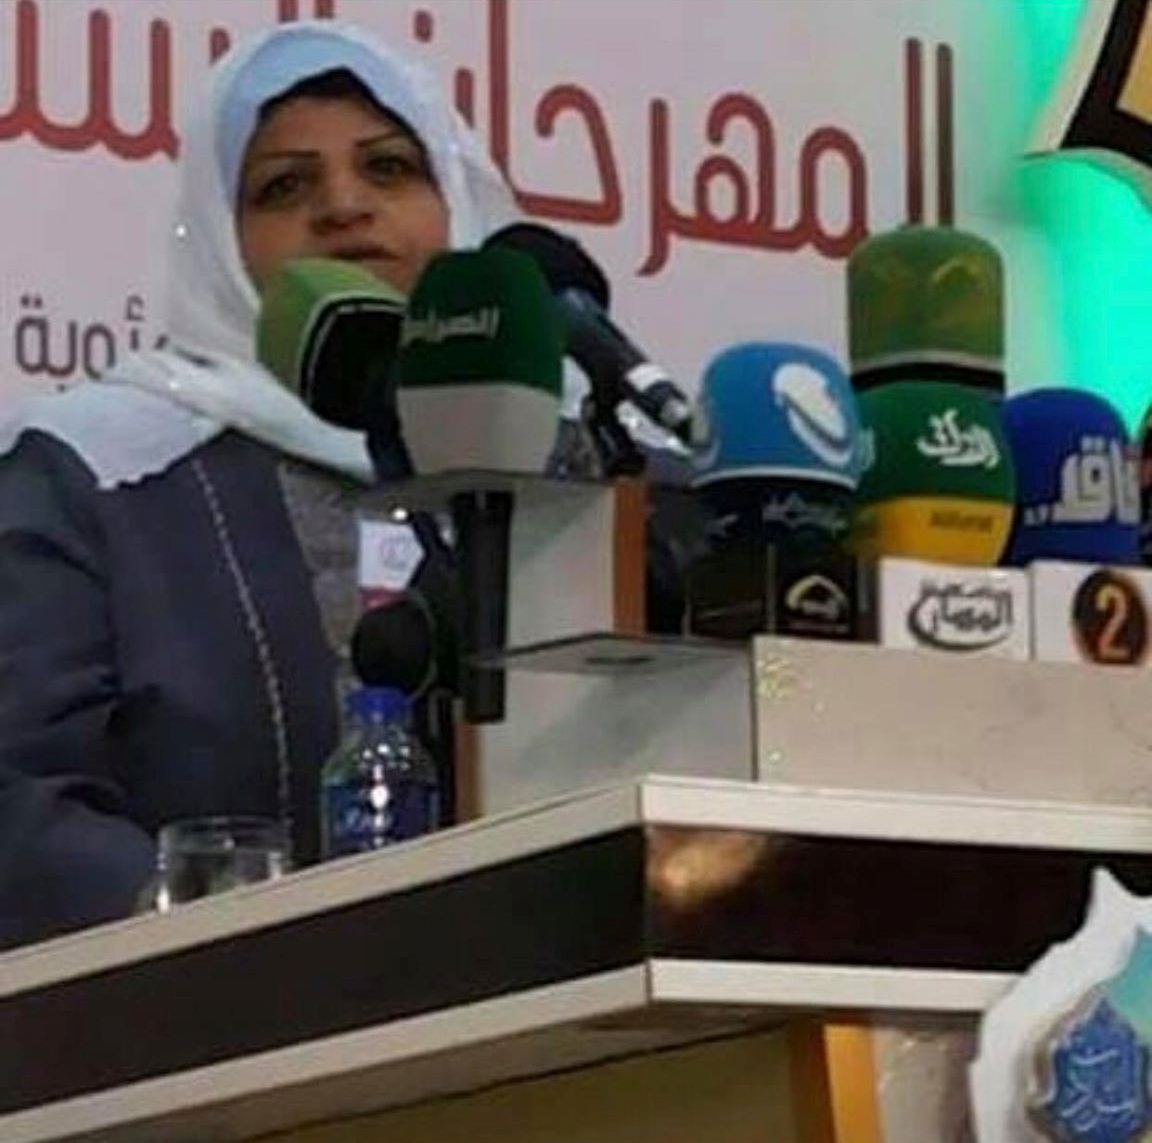 أنا لست لي - الشاعرة العراقية حميدة العسكري